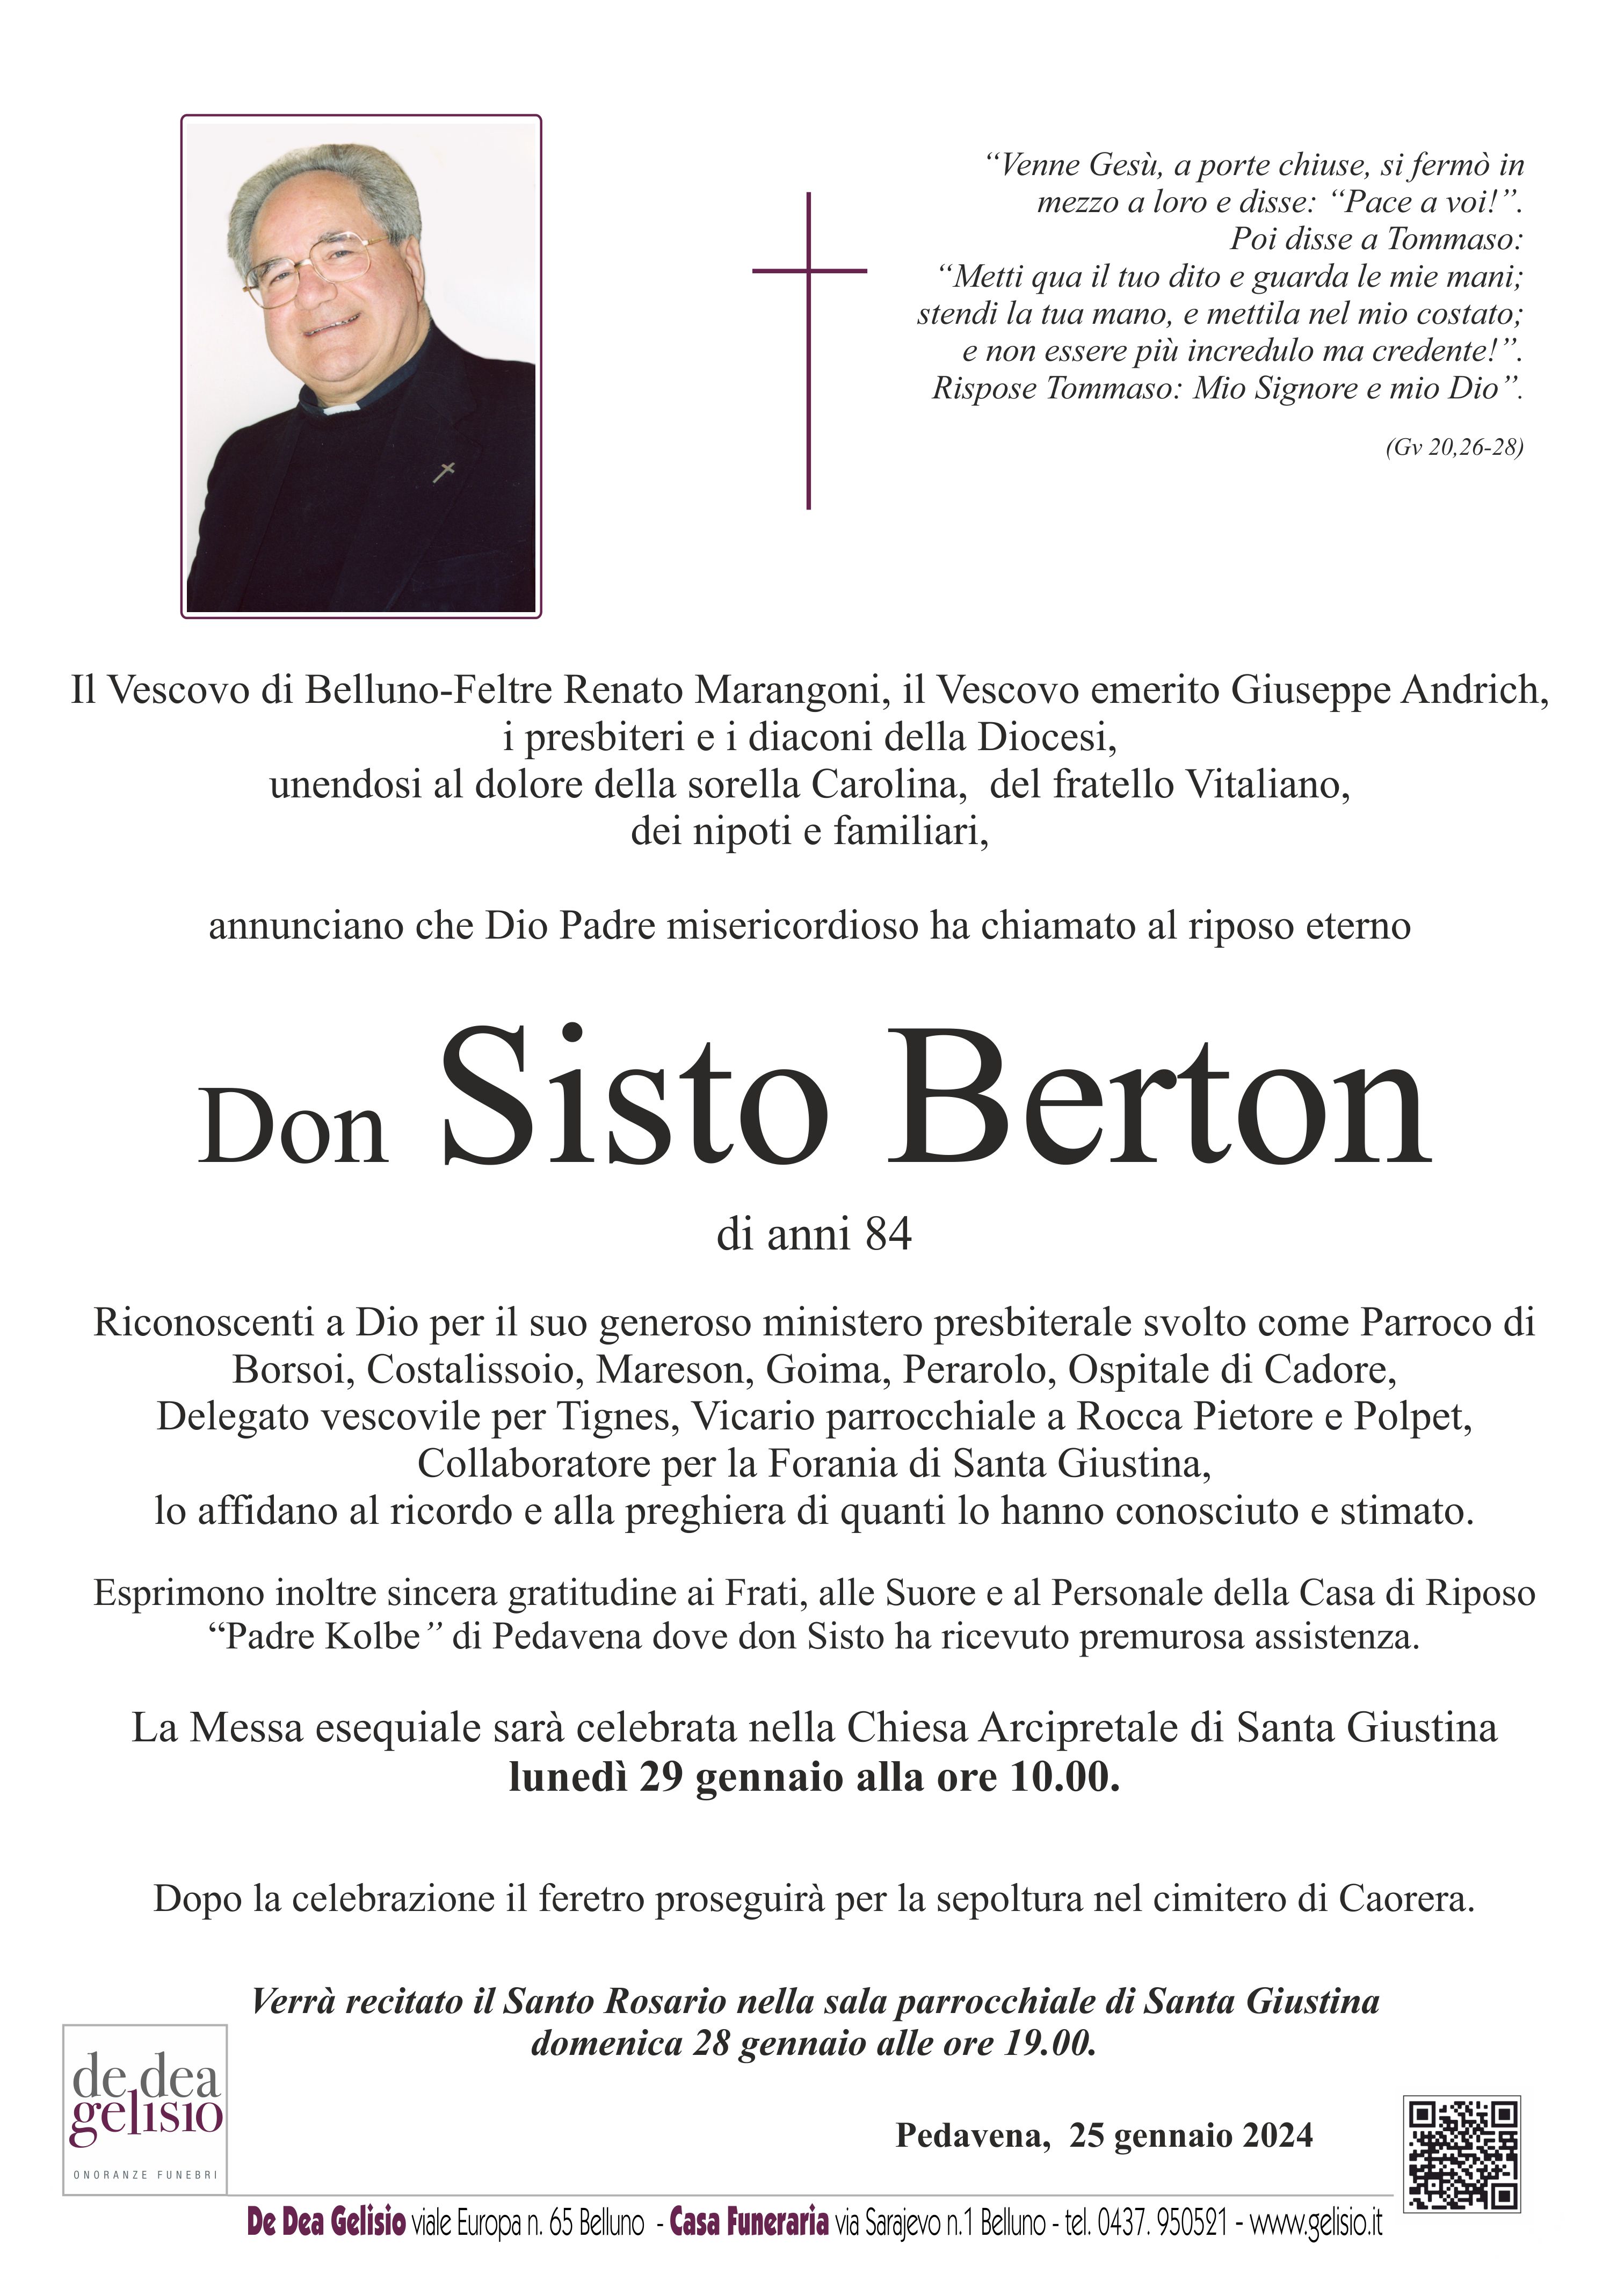 Don Sisto Berton